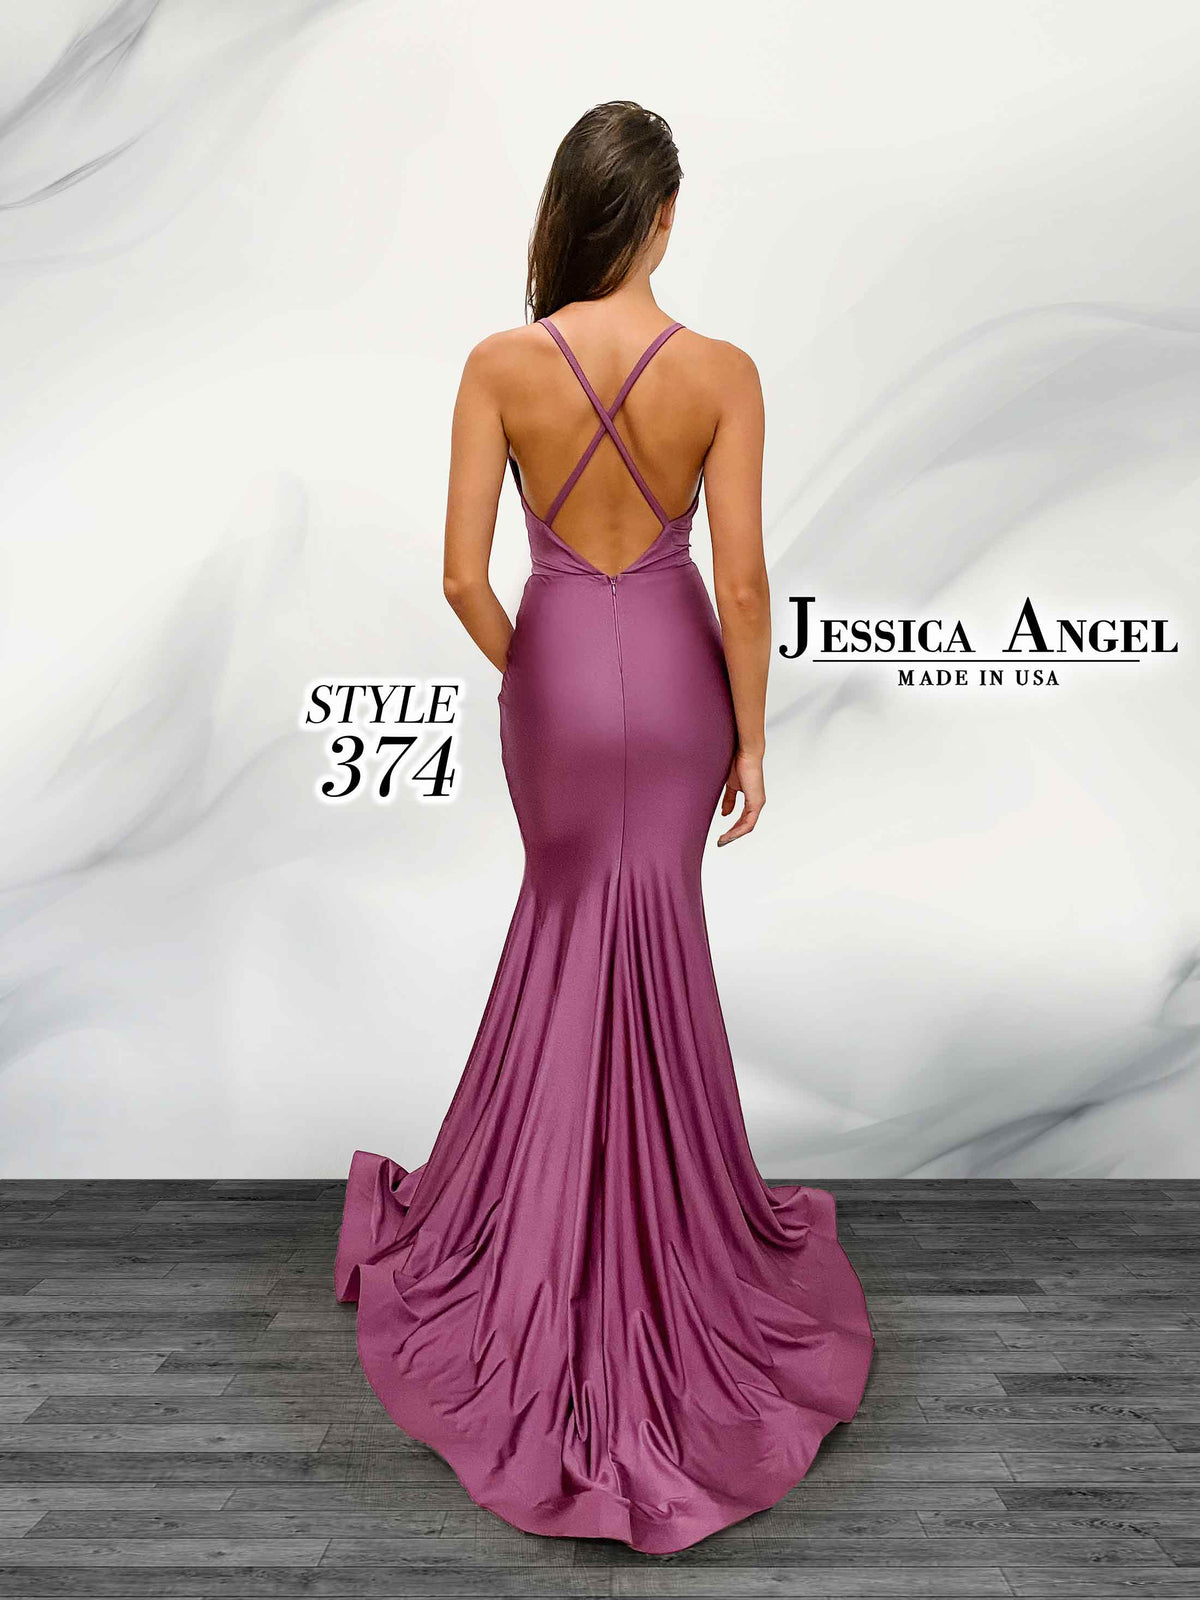 Jessica Angel 374